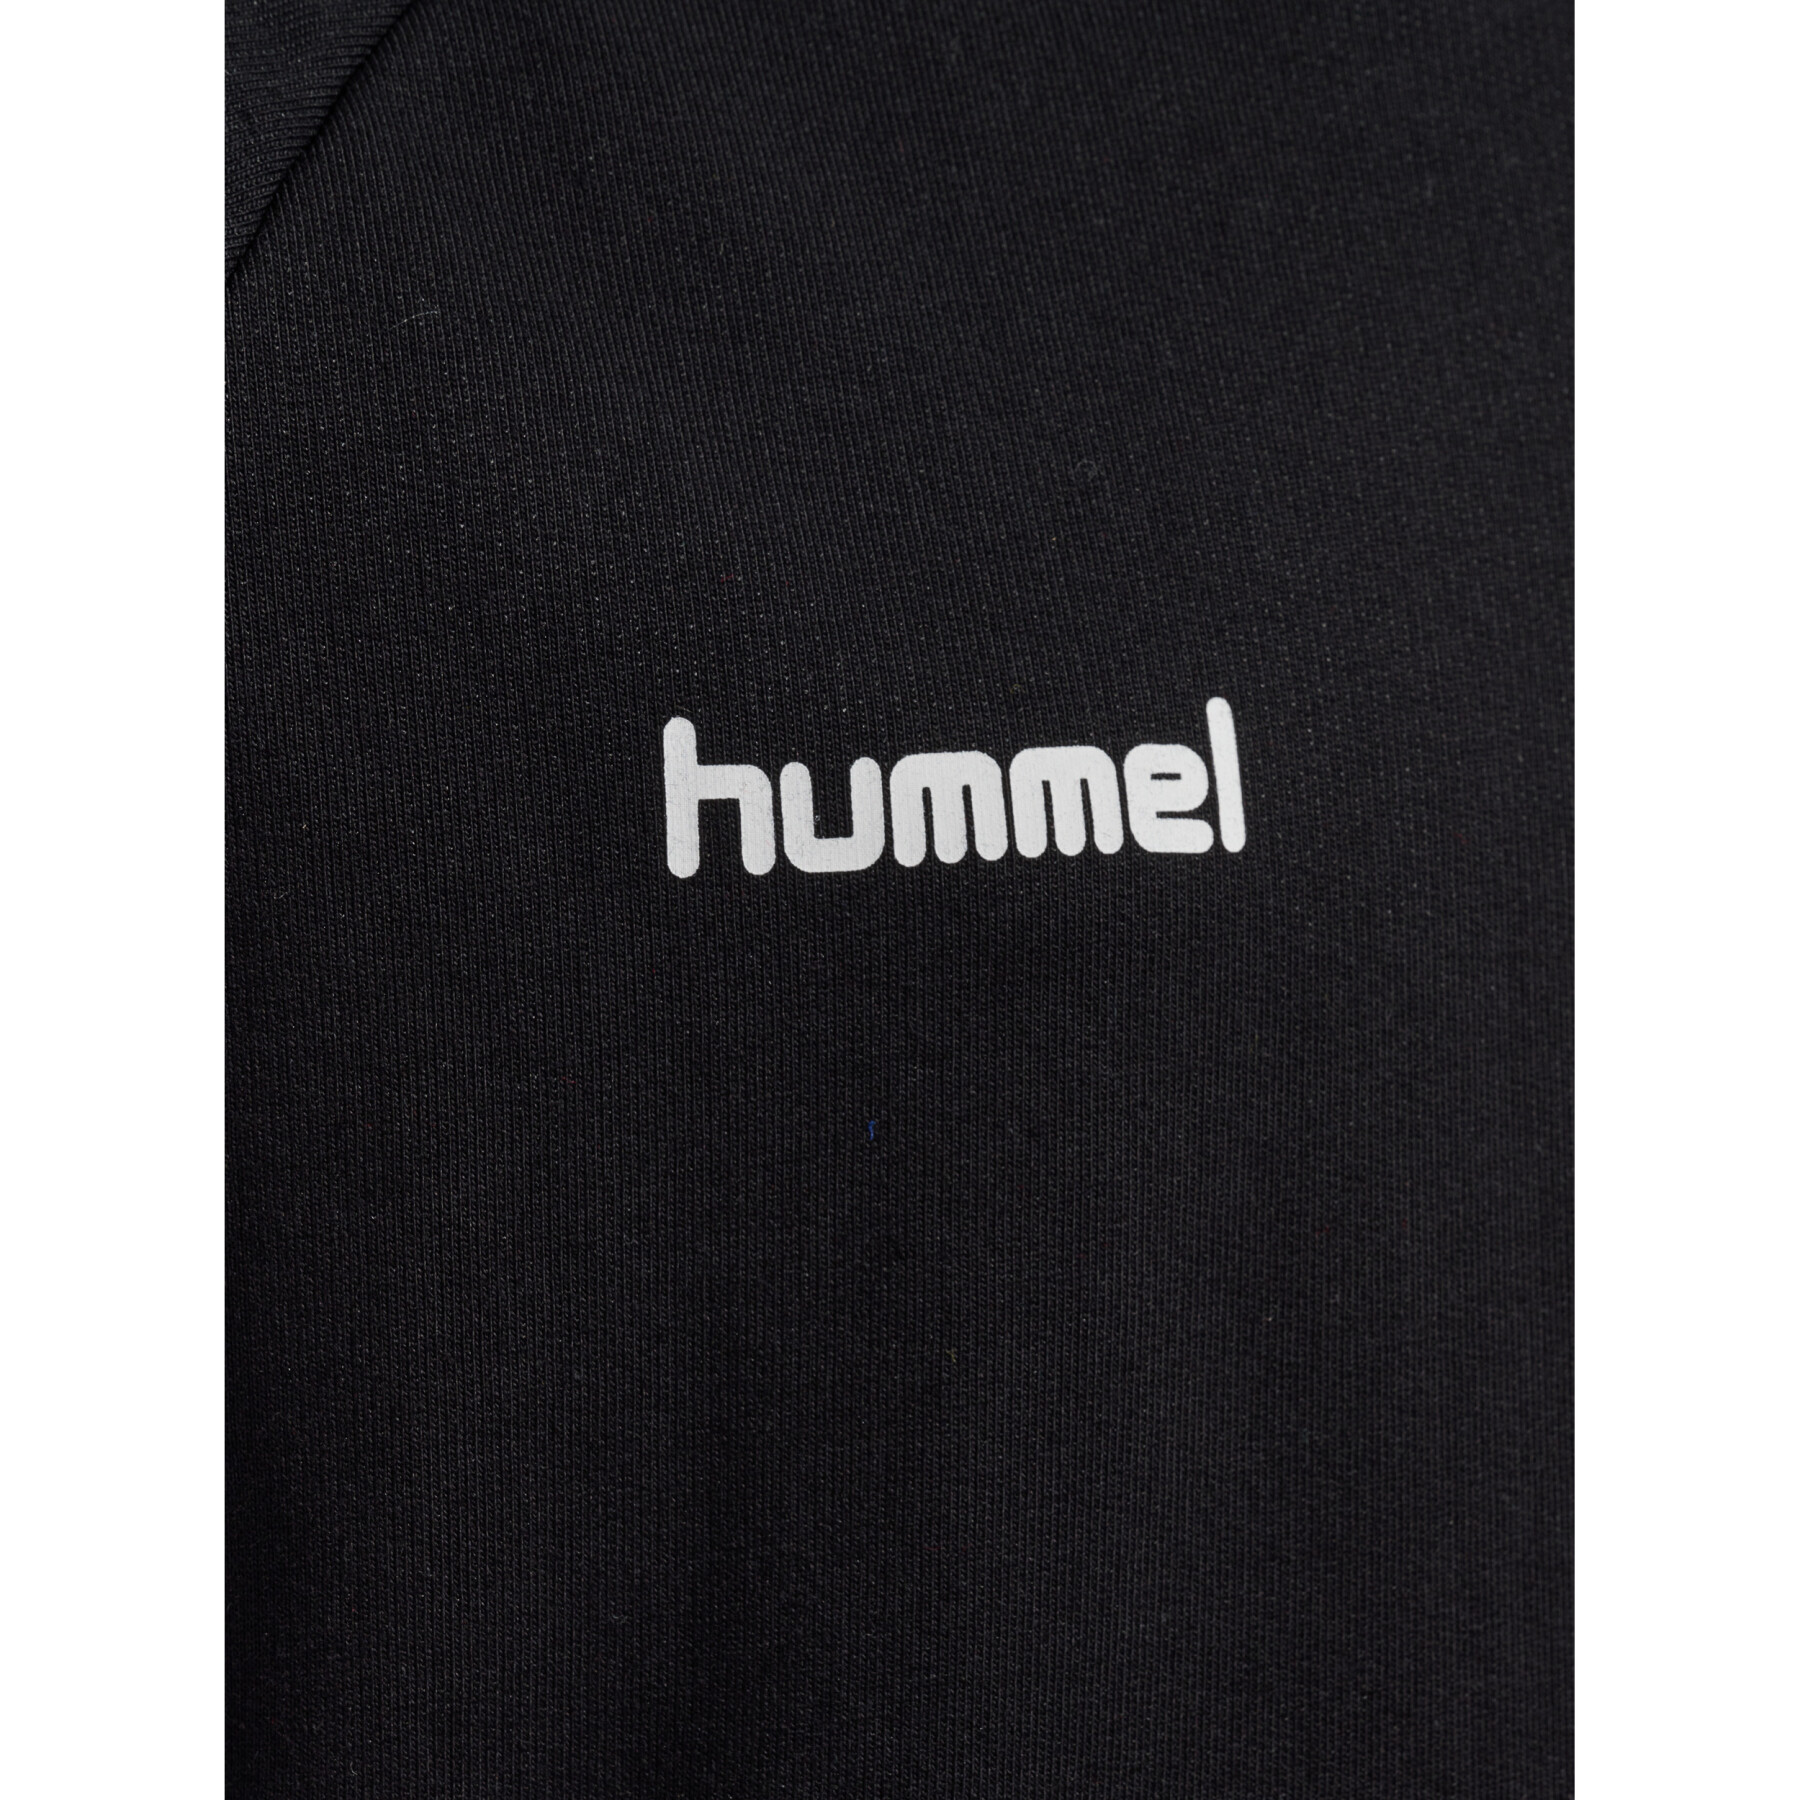 Sweatshirt child Hummel hmlGO cotton